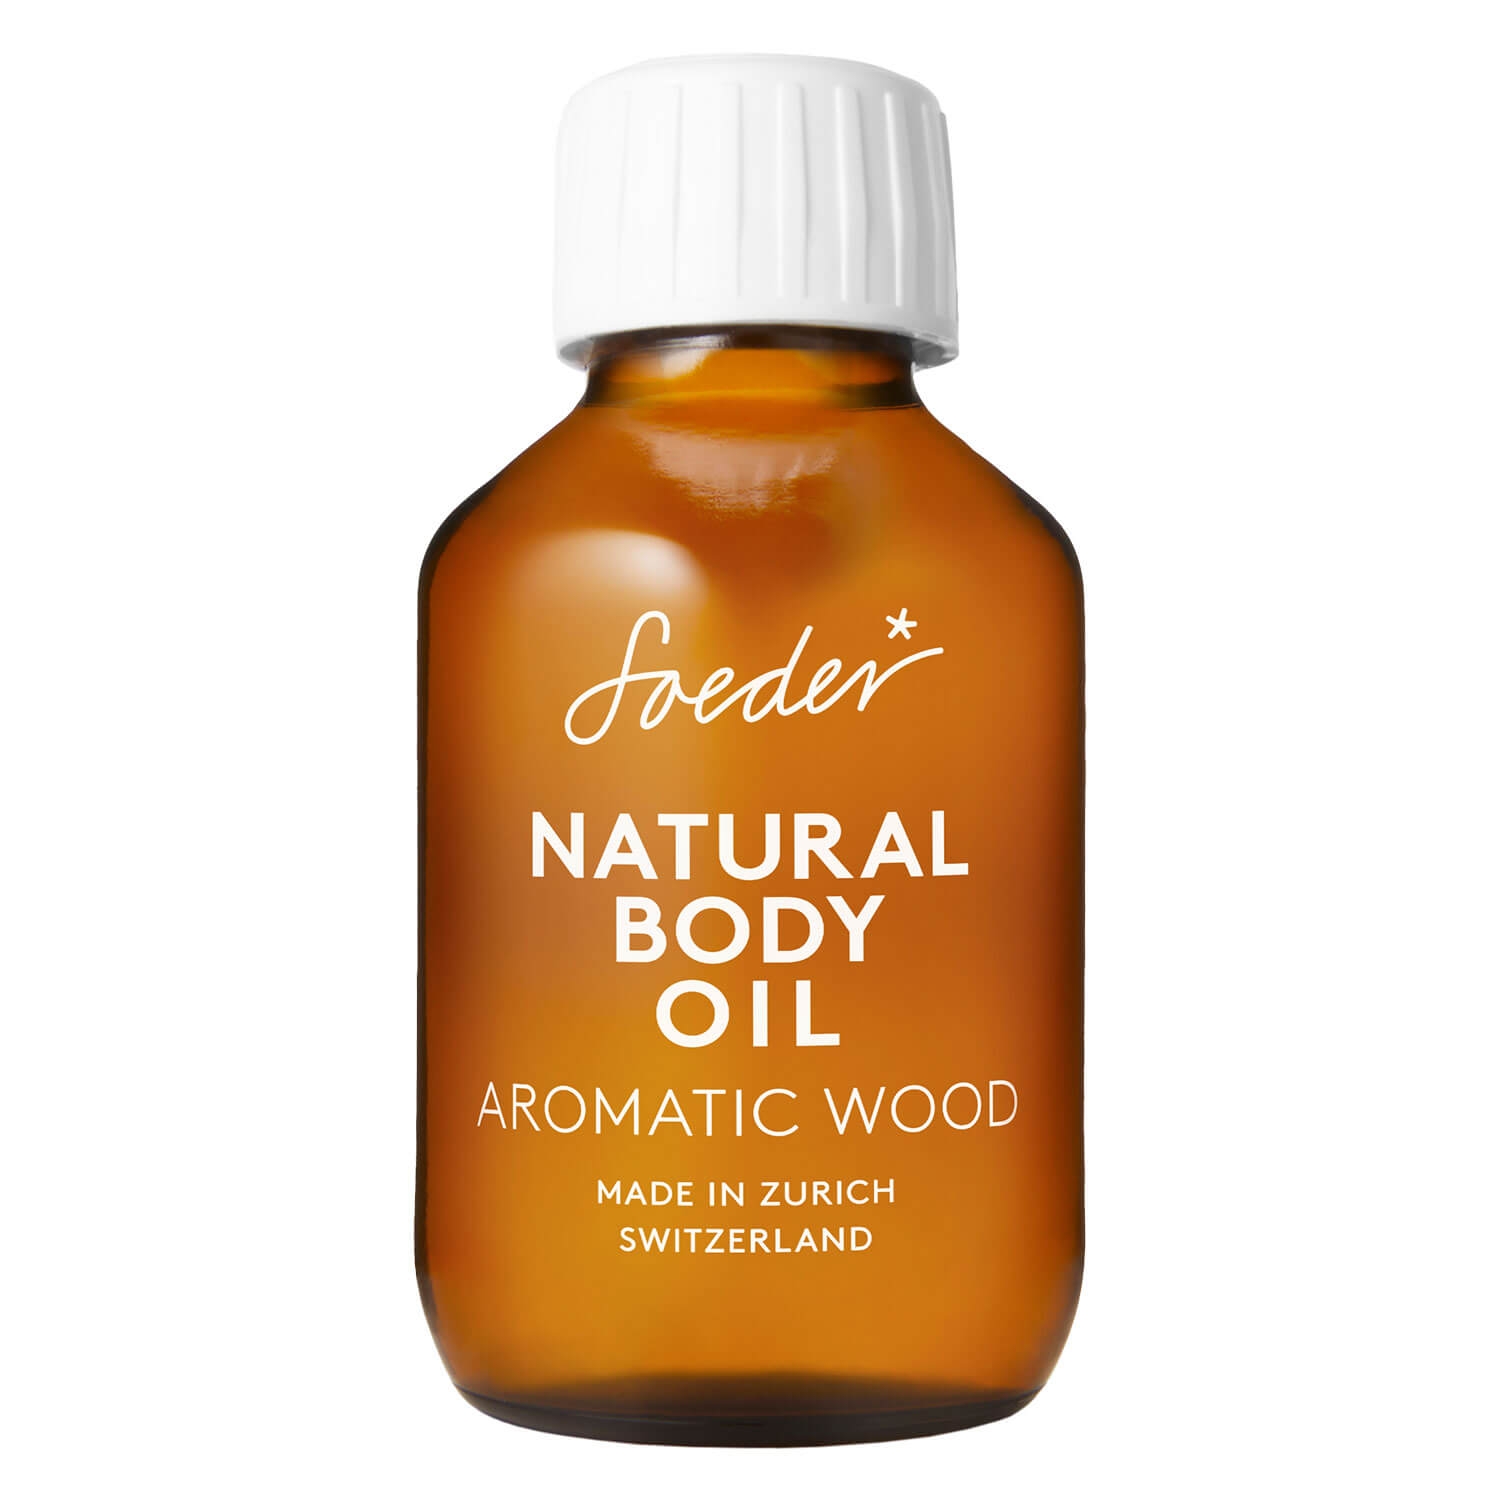 Produktbild von Soeder - Natural Body Oil Aromatic Wood